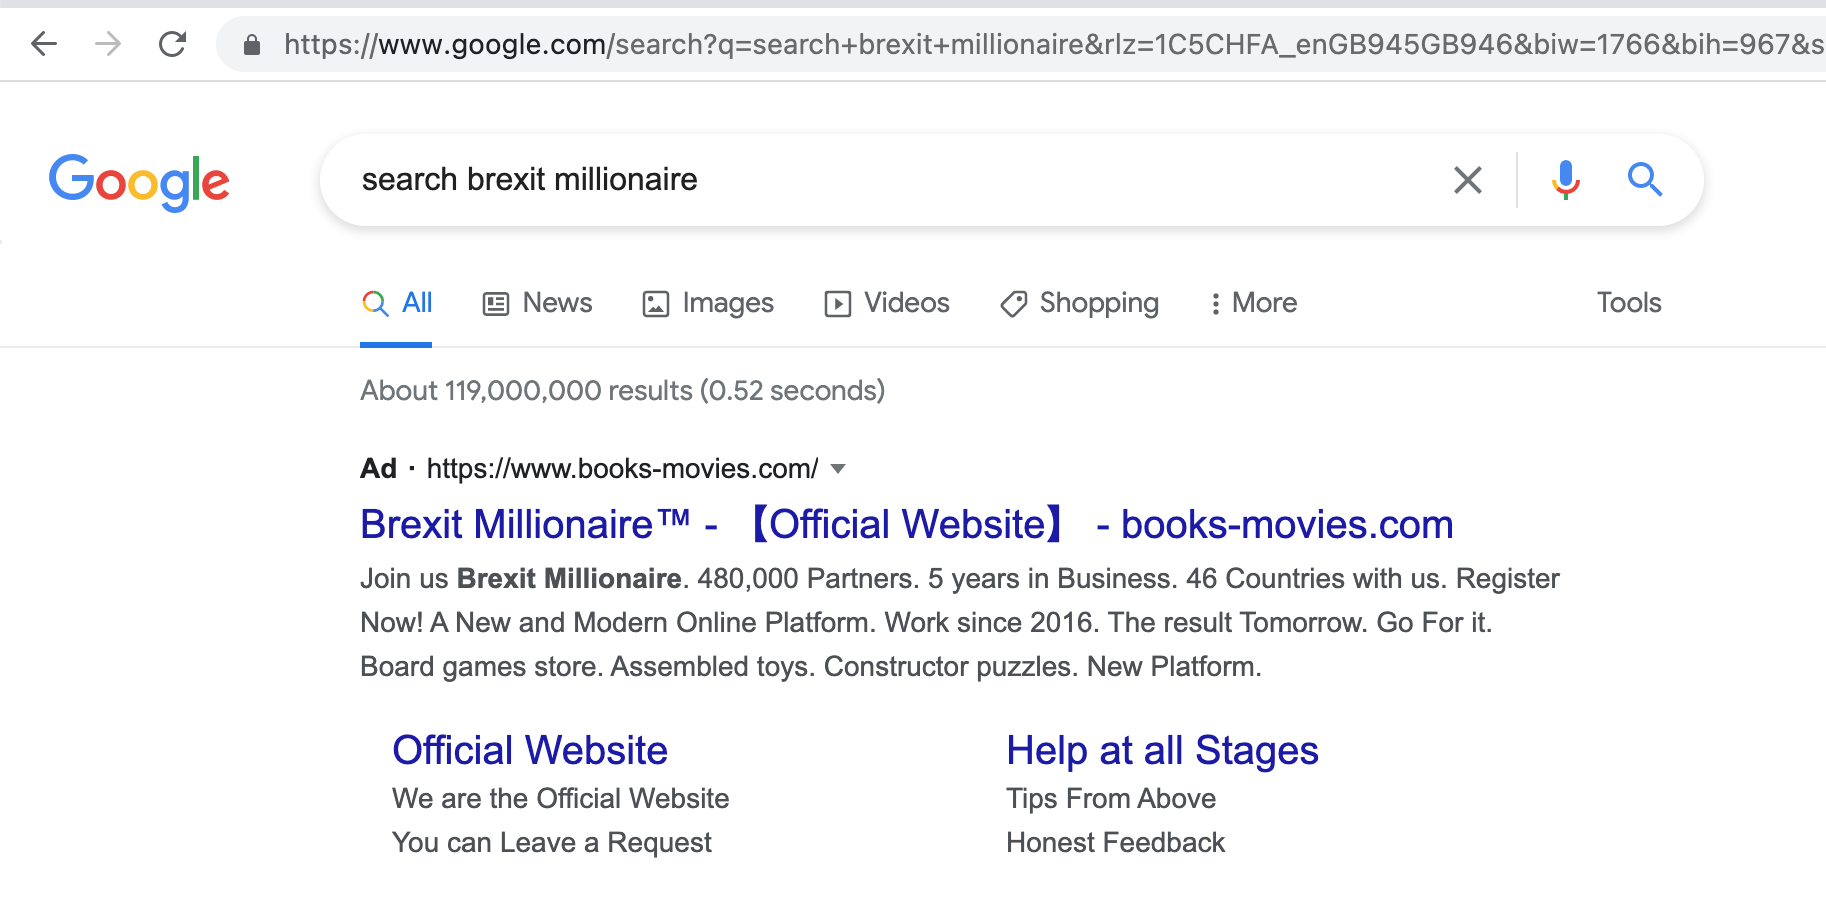 Brexit Millionaire™ - 【Official Website】 - books-movies.com